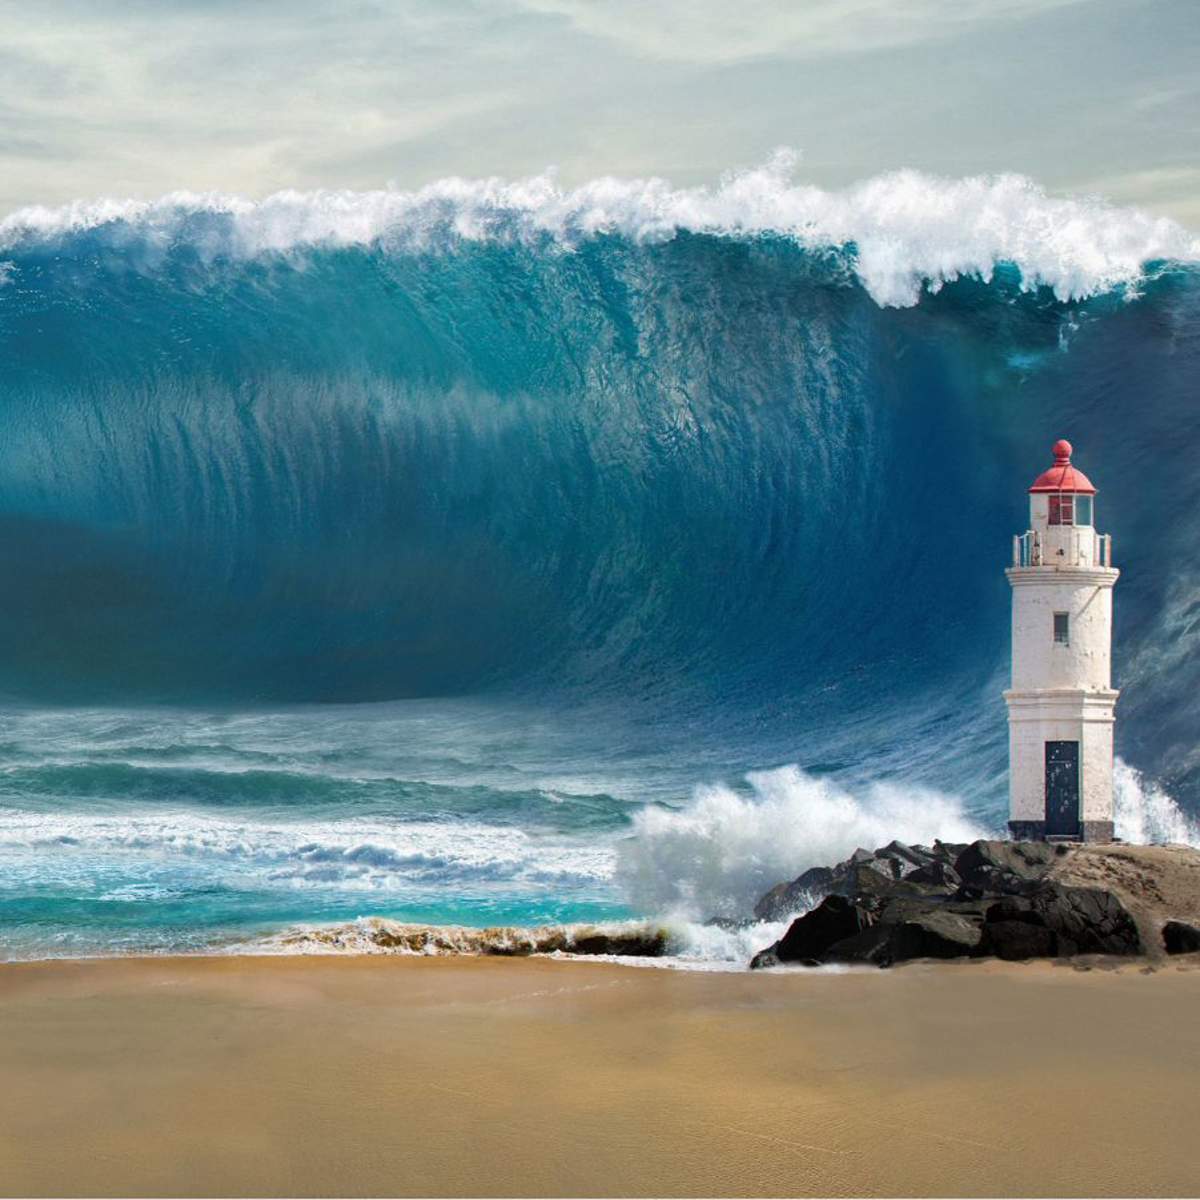 Soñar con tsunamis: ¿qué significa y cómo debemos interpretarlo?